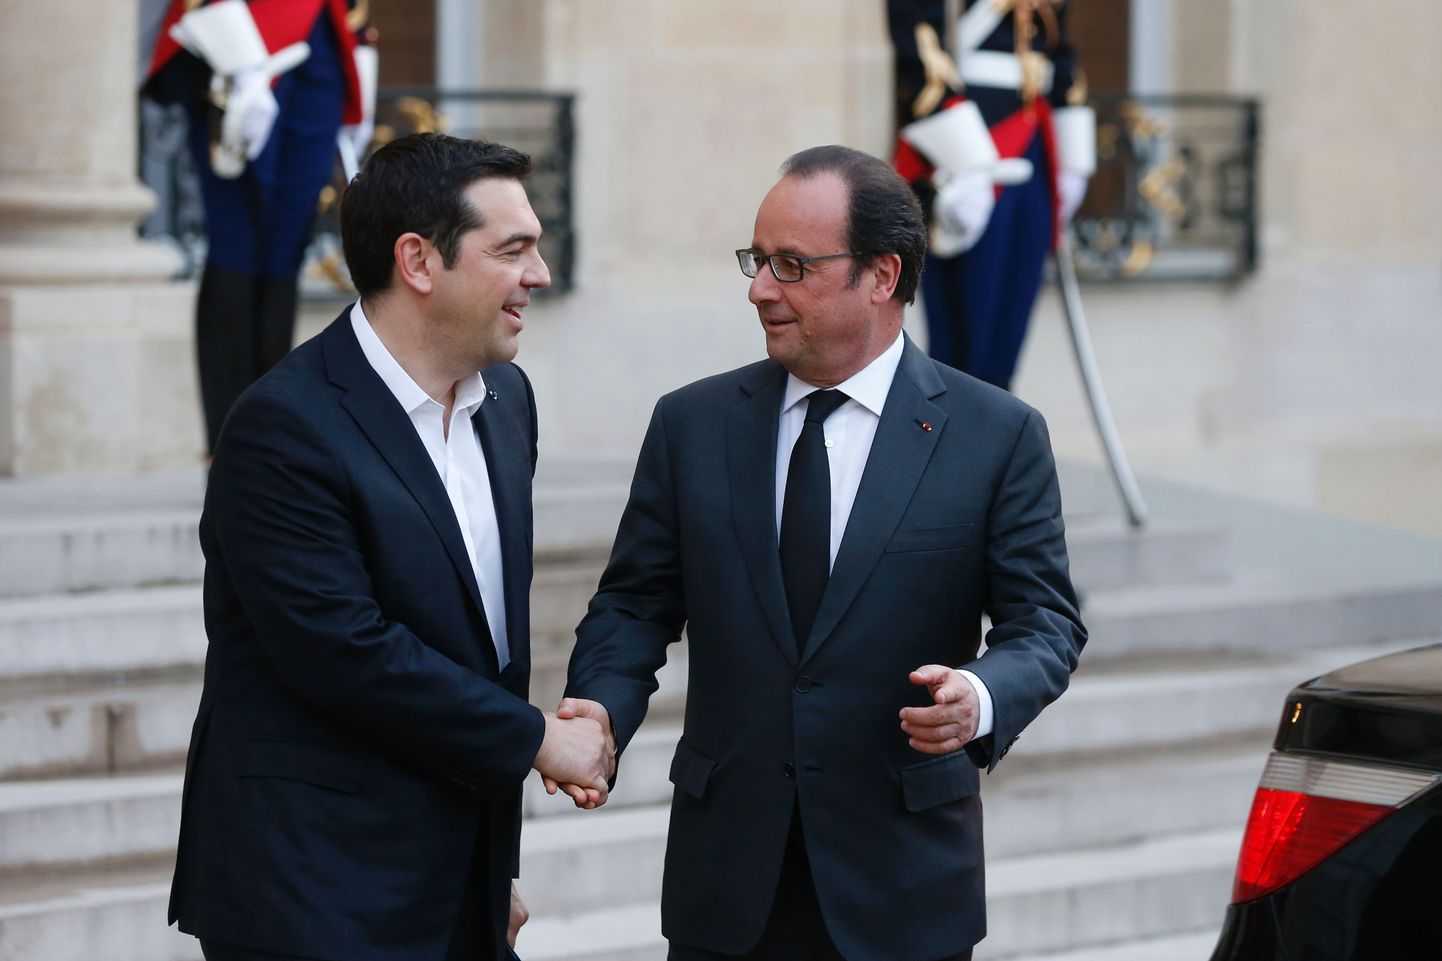 Kreeka peaminister Alexis Tsipras käis Prantsuse presidendi Francois Hollande'ga abipaketist rääkimas.